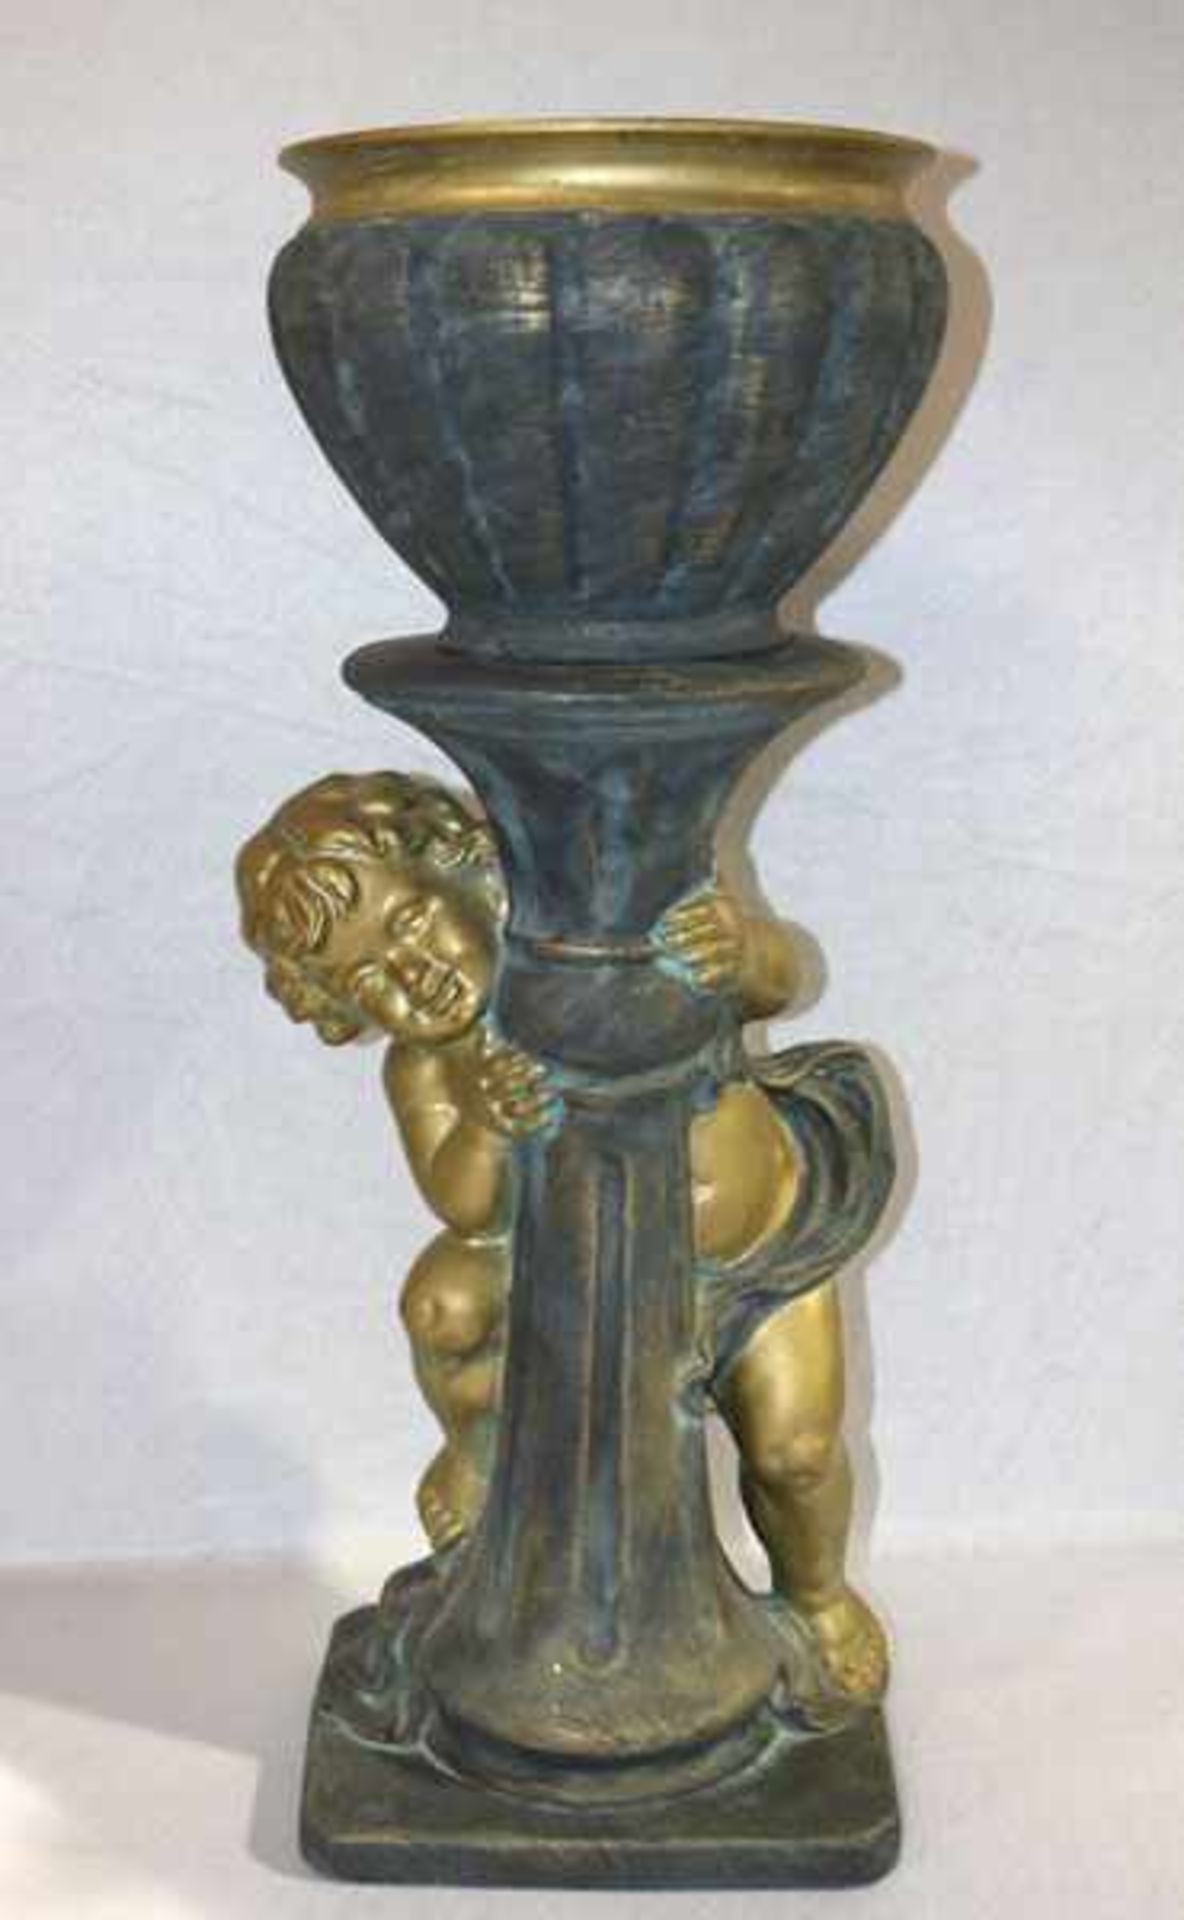 Keramik Blumenschale auf Fuß mit plastischem Engeldekor, grau/gold bemalt, teils bestossen und